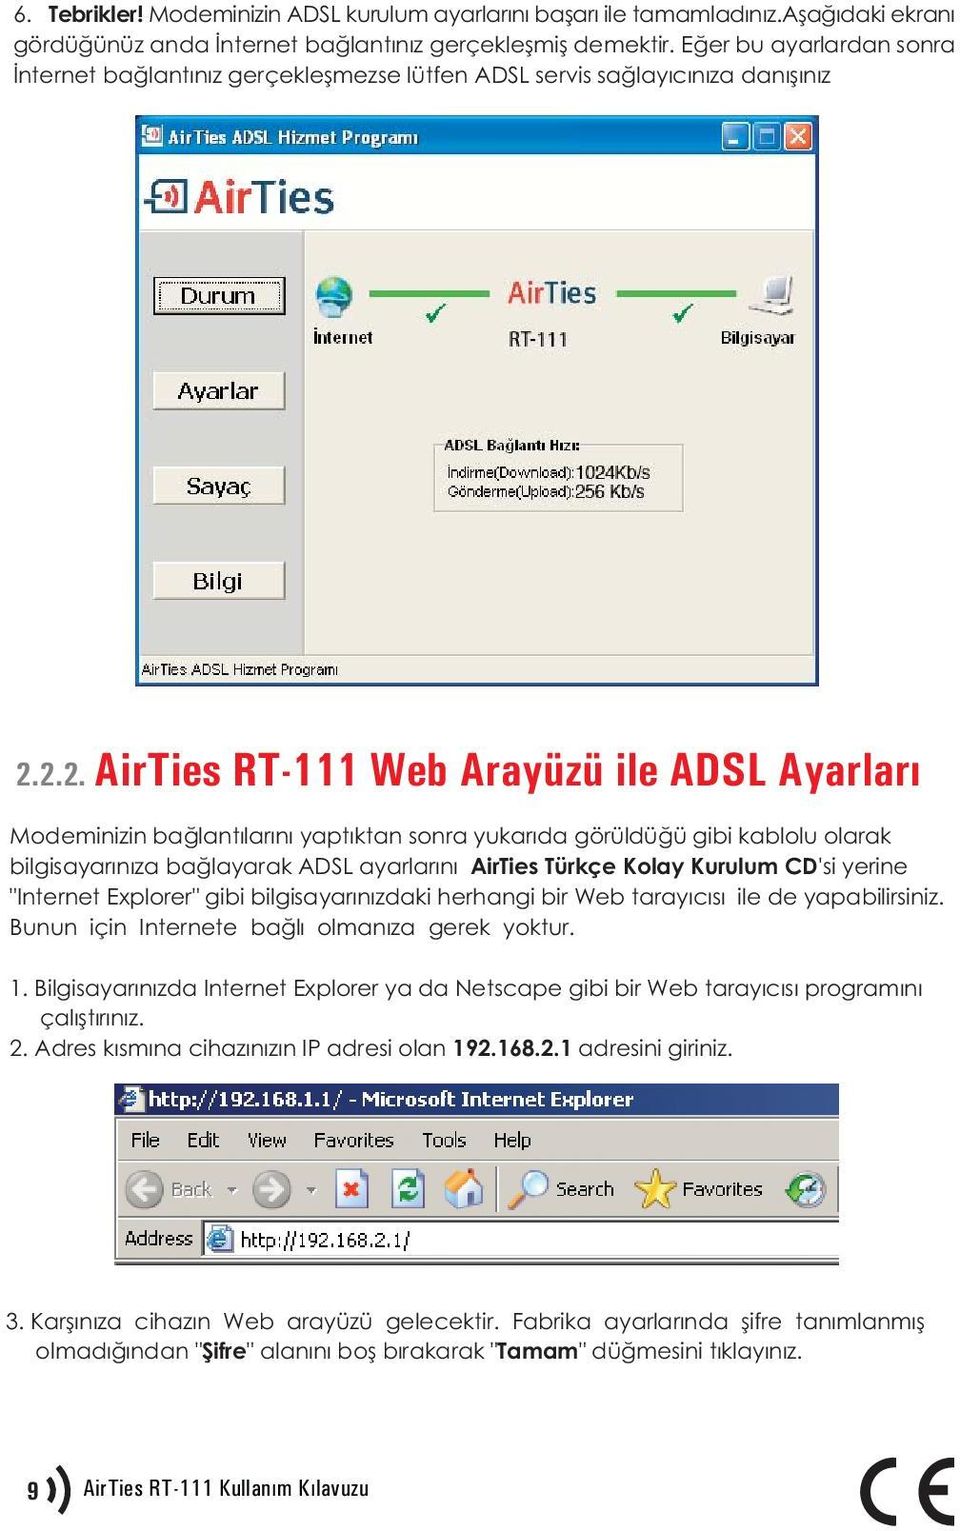 2.2. AirTies RT-111 Web Arayüzü ile ADSL Ayarlarý Modeminizin baðlantýlarýný yaptýktan sonra yukarýda görüldüðü gibi kablolu olarak bilgisayarýnýza baðlayarak ADSL ayarlarýný AirTies Türkçe Kolay